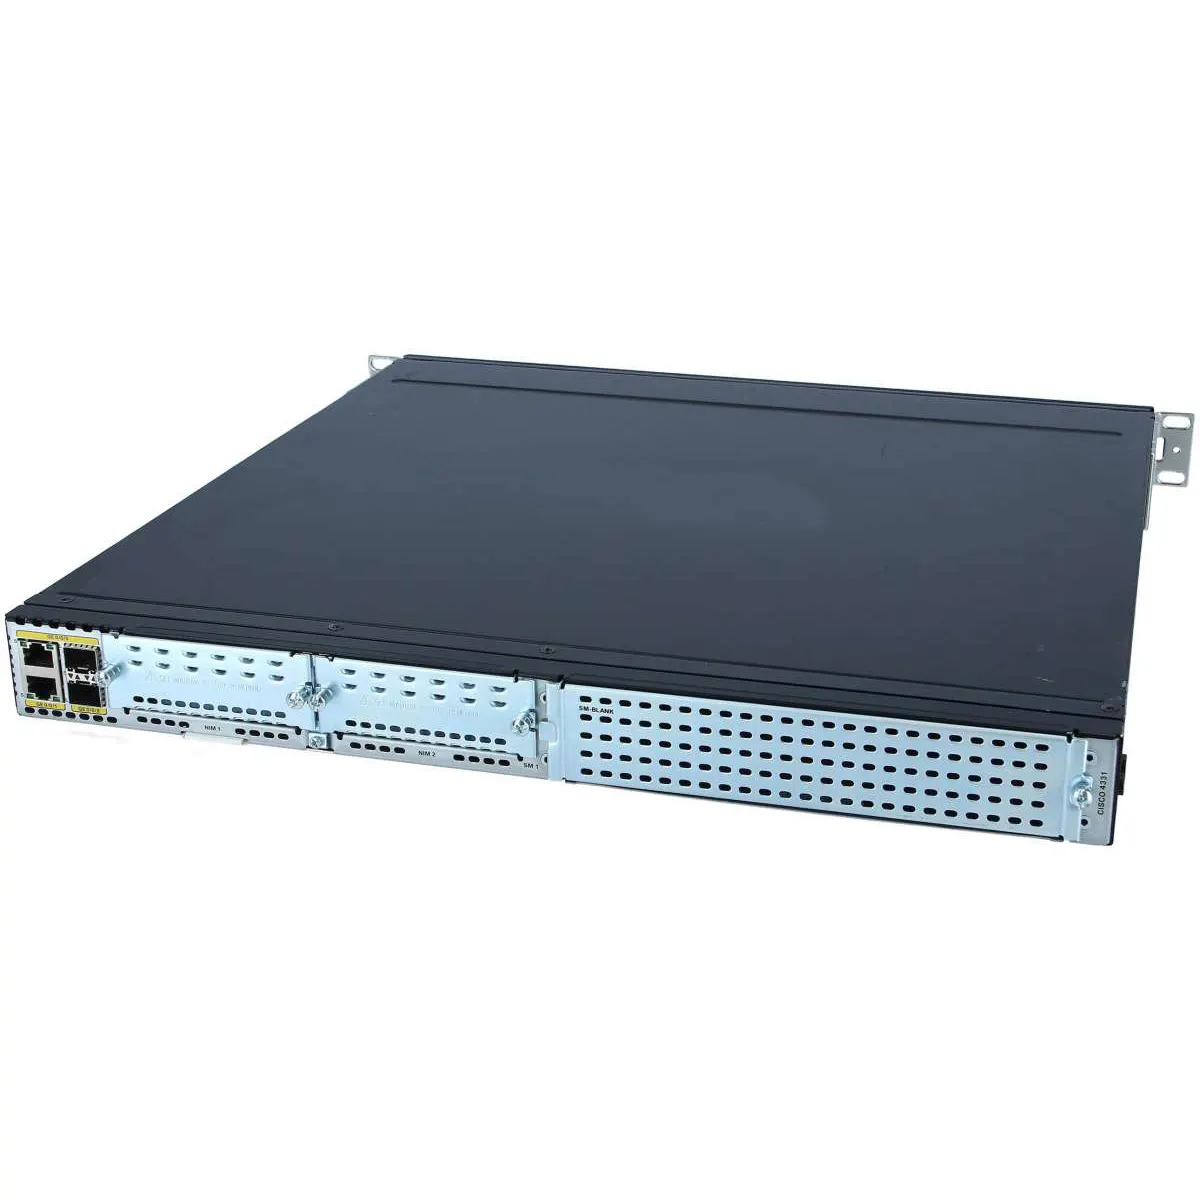 Originele Isr 4331 Uc Bundel Voice Router ISR4331-V/K9